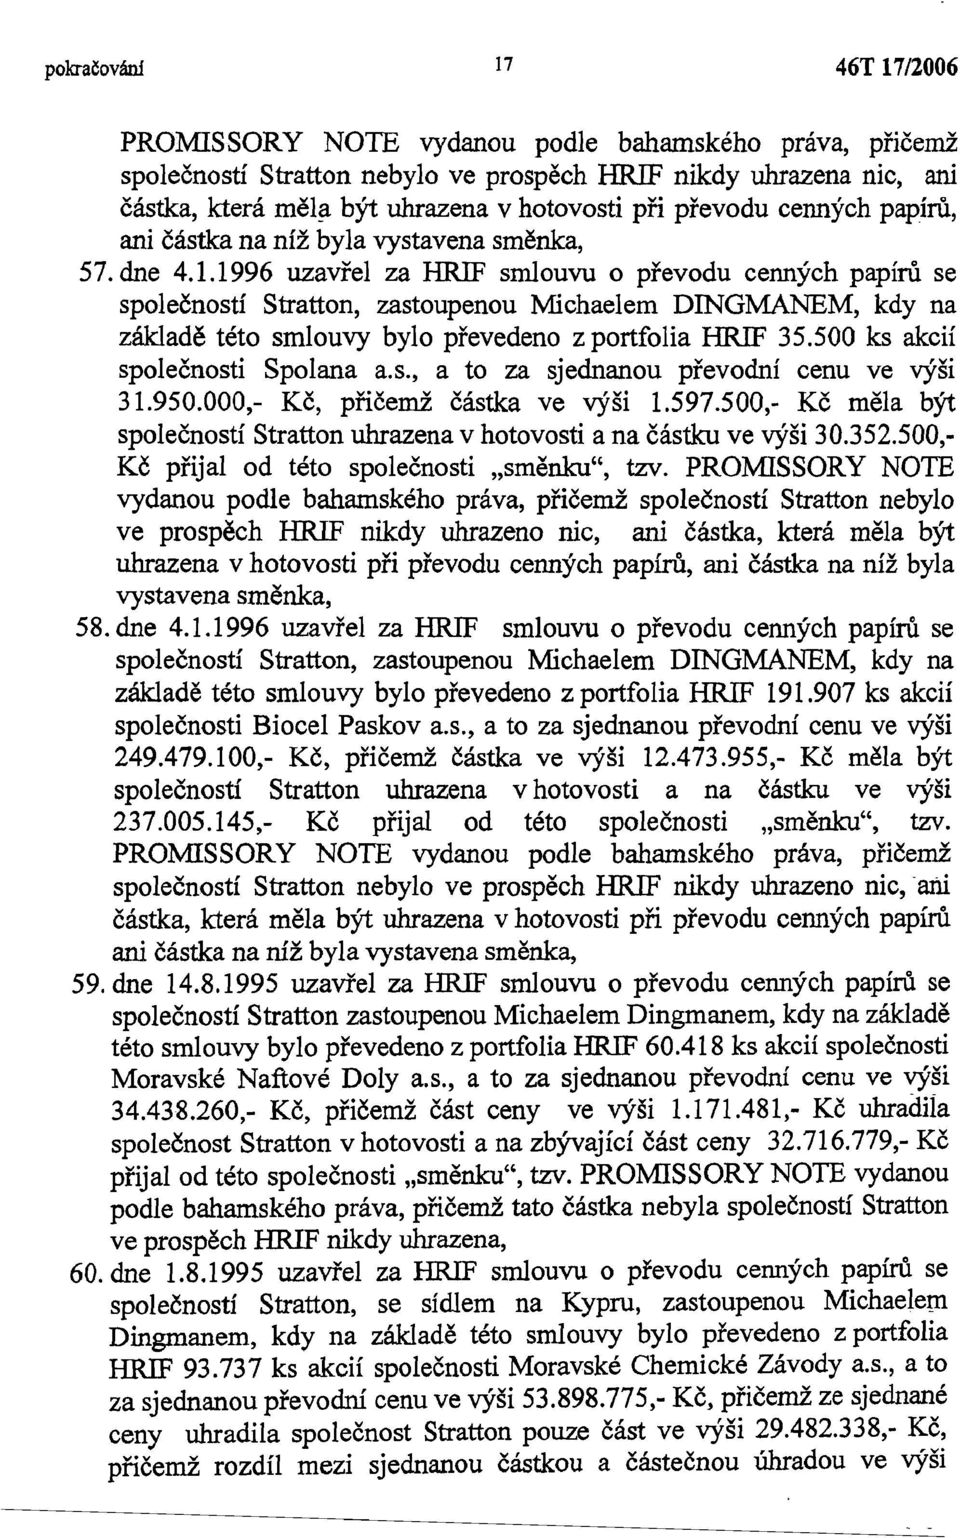 1996 uzavřel za HRIF smlouvu o převodu cenných papírů se společností Stratton, zastoupenou Michaelem DINGMANEM, kdy na základě této smlouvy bylo převedeno z portfolia HRIF 35.